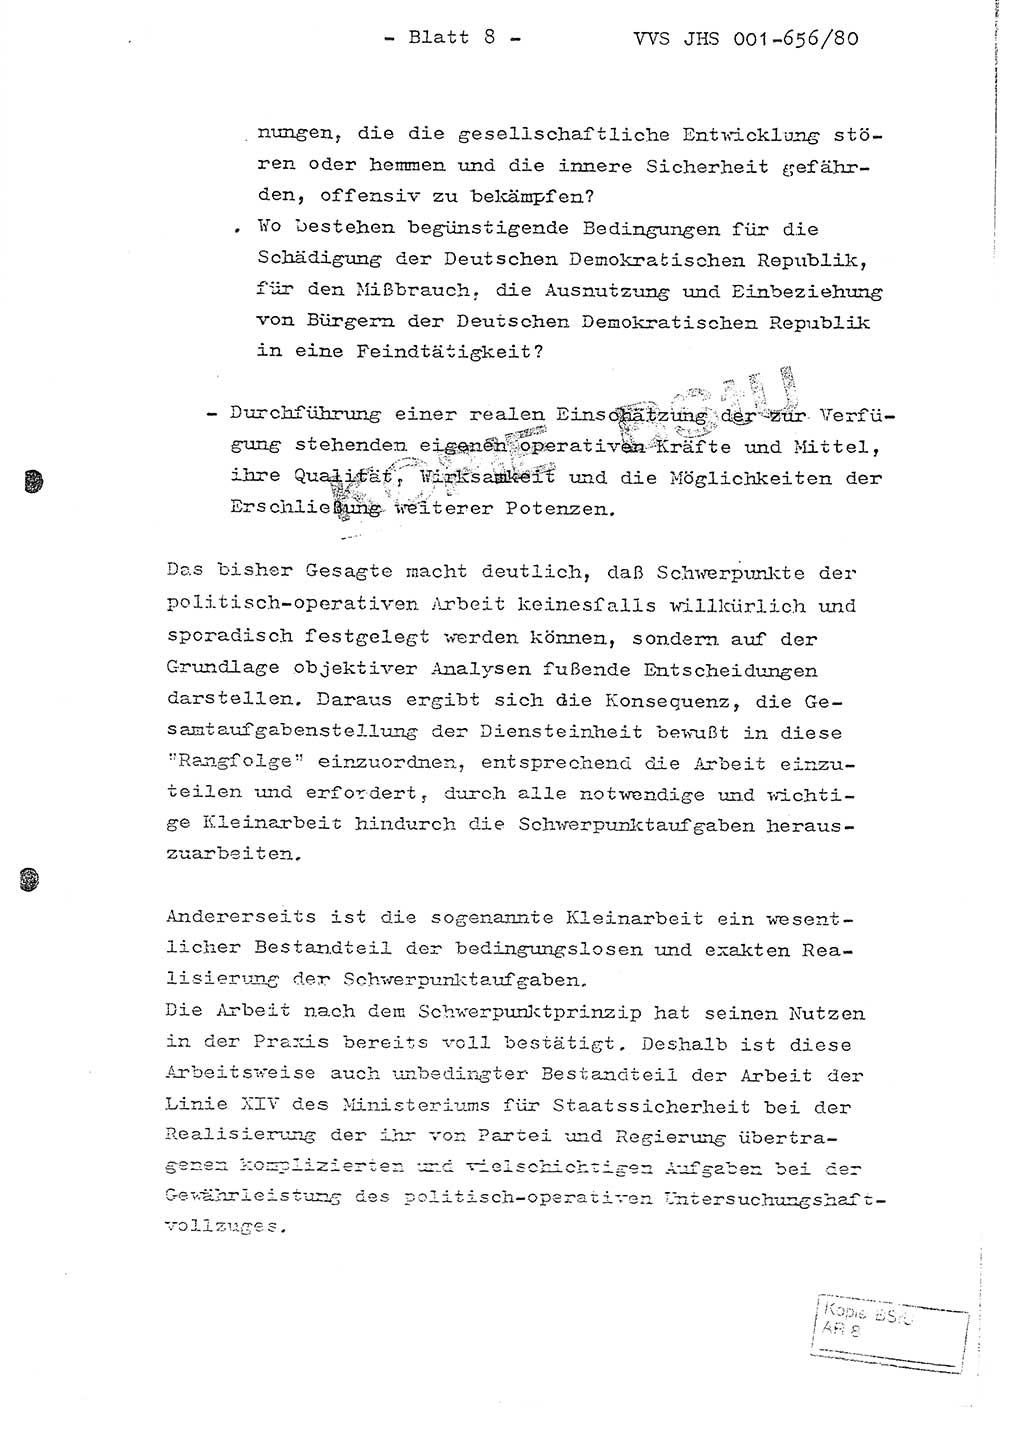 Fachschulabschlußarbeit Unterleutnant Christian Kätzel (Abt. ⅩⅣ), Ministerium für Staatssicherheit (MfS) [Deutsche Demokratische Republik (DDR)], Juristische Hochschule (JHS), Vertrauliche Verschlußsache (VVS) 001-656/80, Potsdam 1980, Blatt 8 (FS-Abschl.-Arb. MfS DDR JHS VVS 001-656/80 1980, Bl. 8)